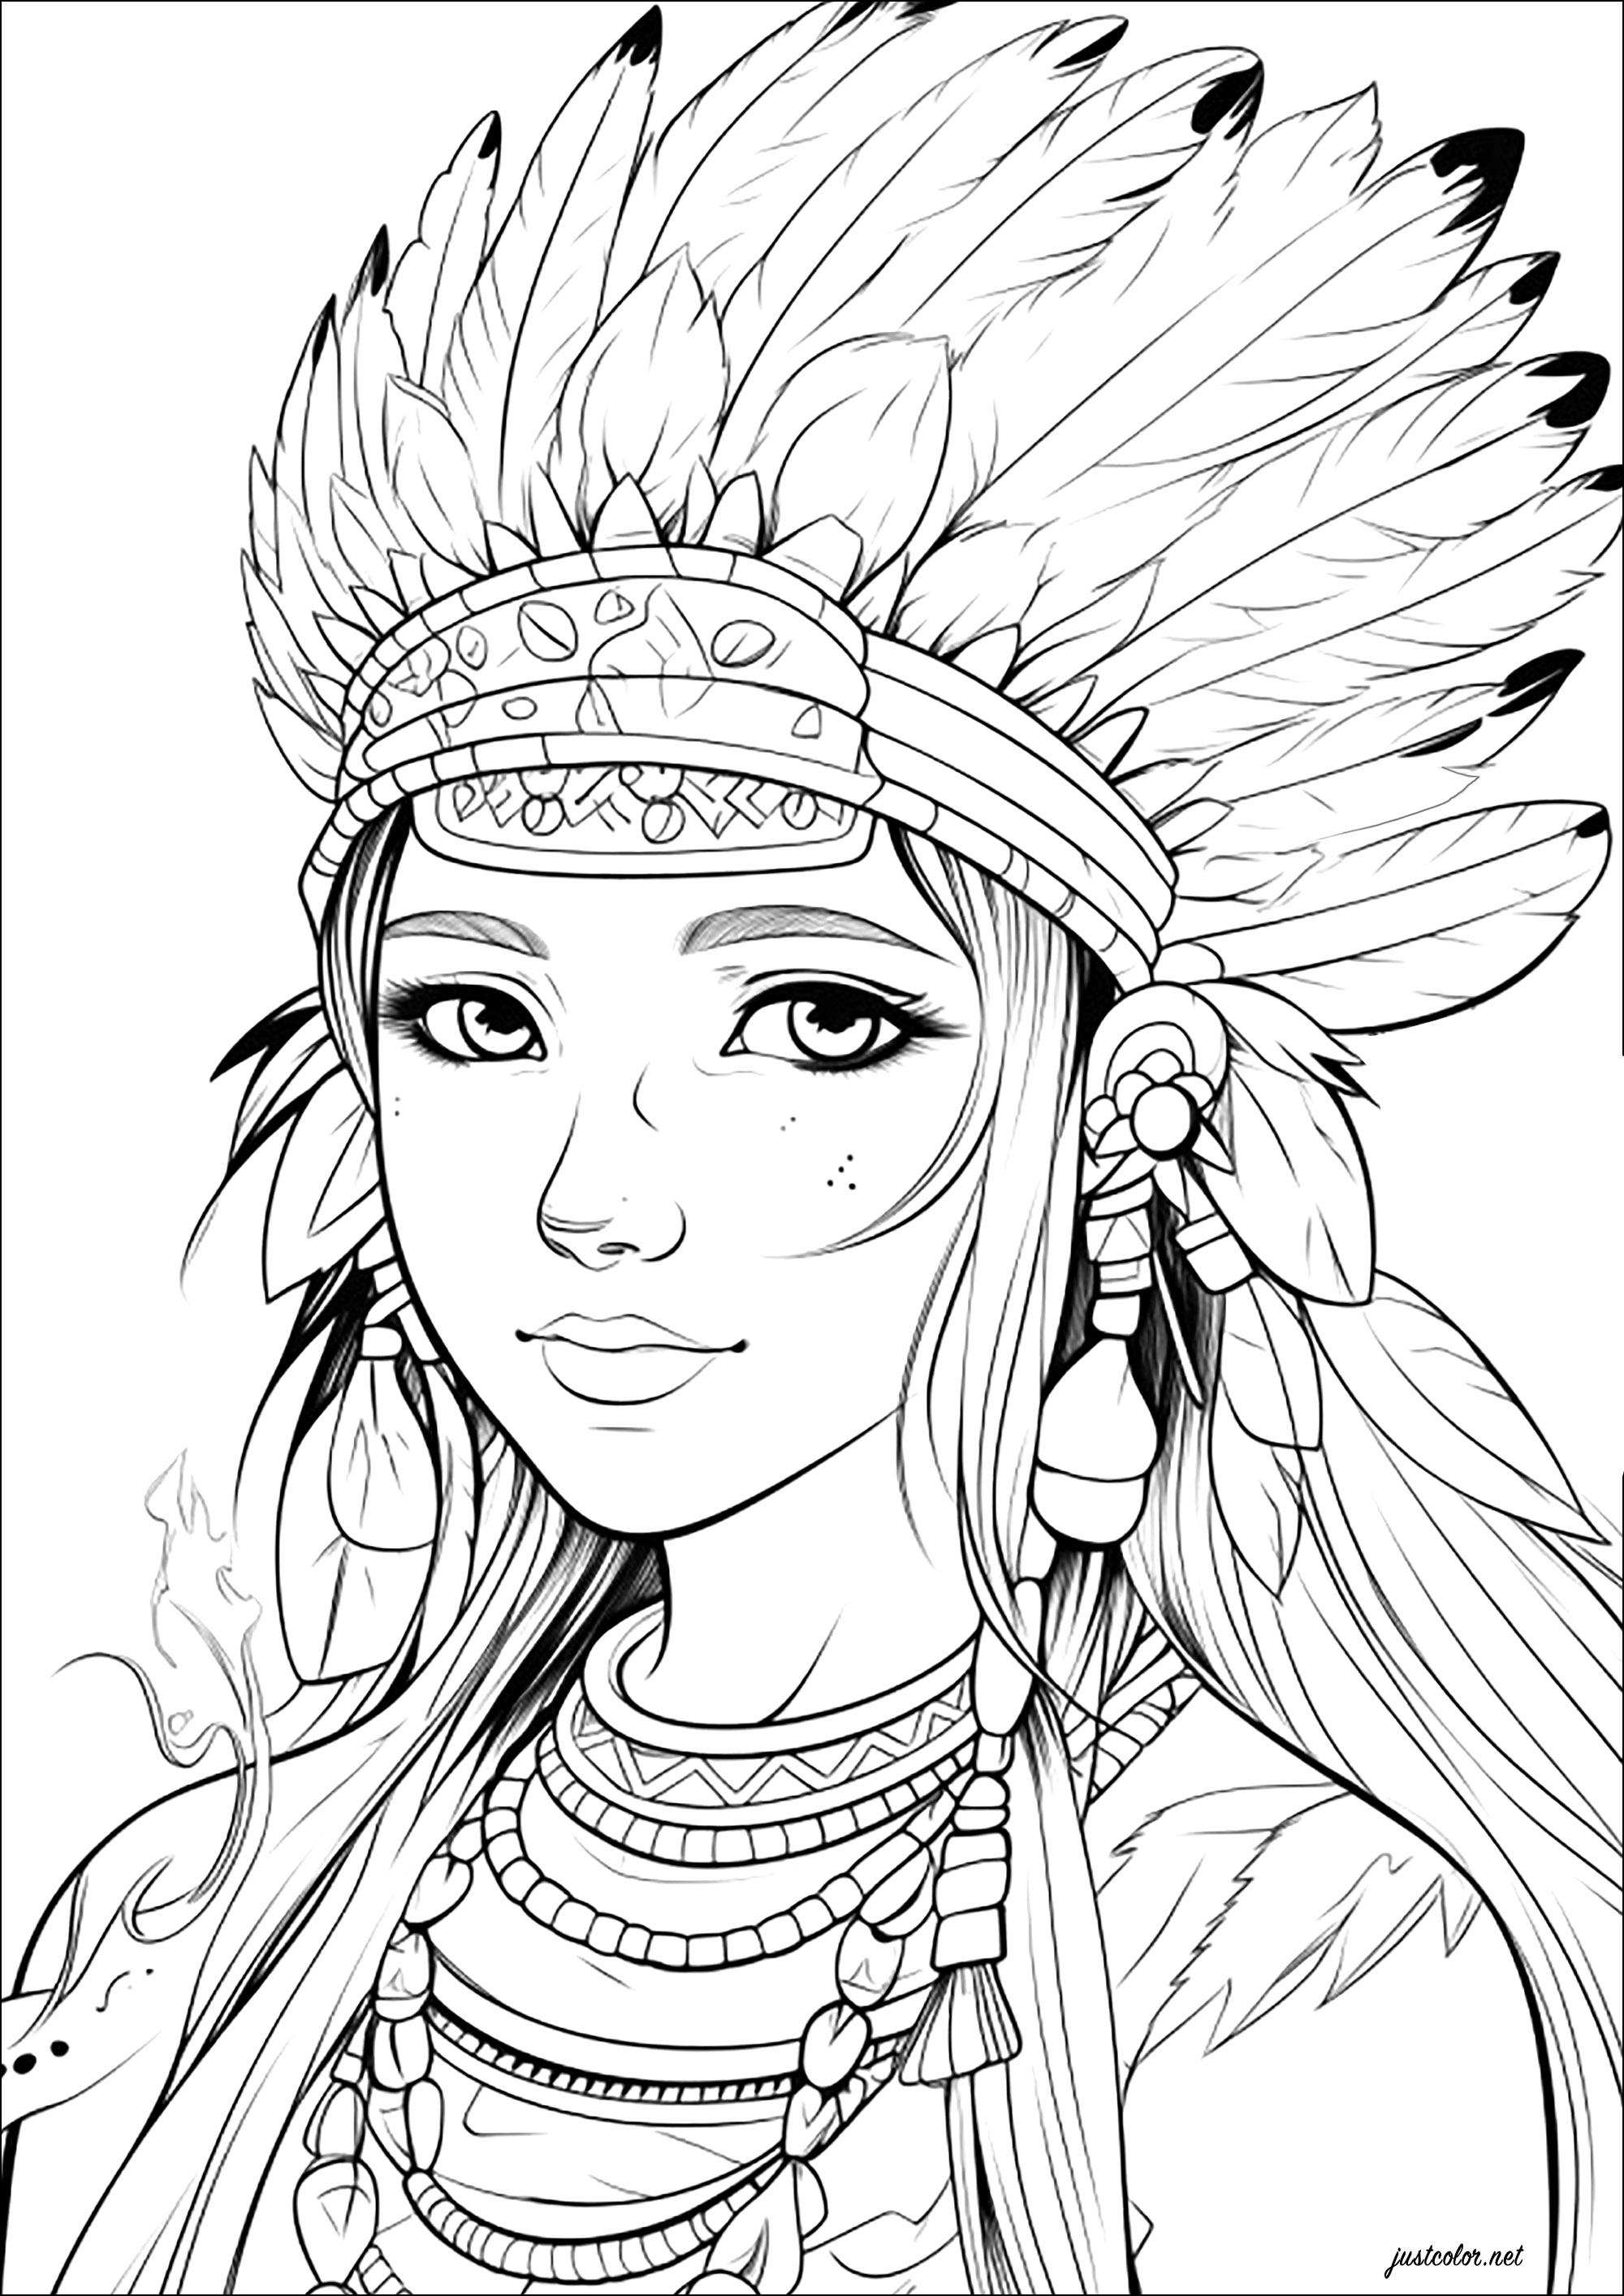 Jeune femme avec une coiffe d'Indiens d'Amérique. Imaginez qu'il s'agit de la fille du chef d'une tribu d'Indiens d'Amérique, et c'est parti pour un excellent moment de coloriage